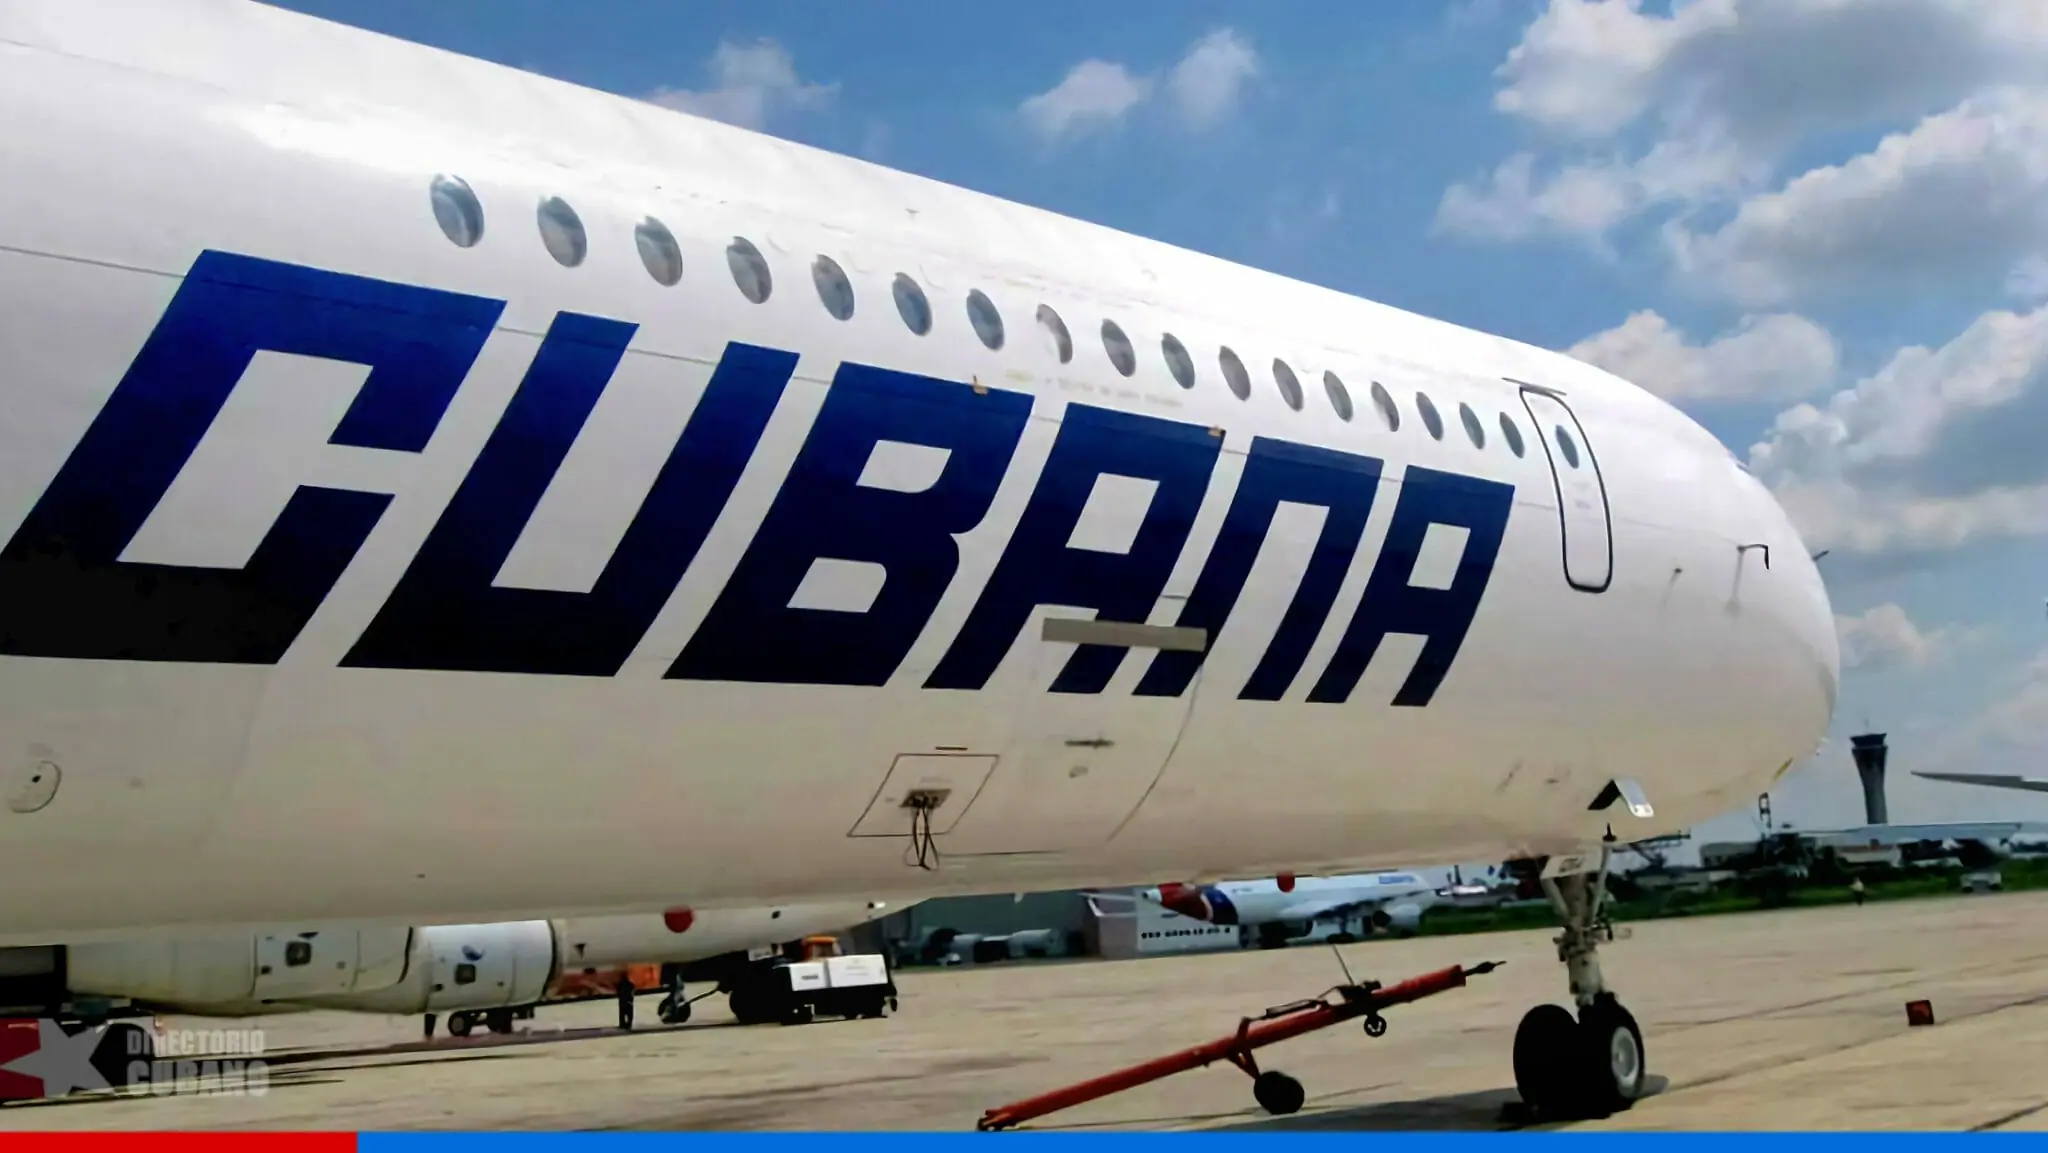 Cubana de Aviación obligada a suspender vuelos desde y hacia Argentina por este motivo